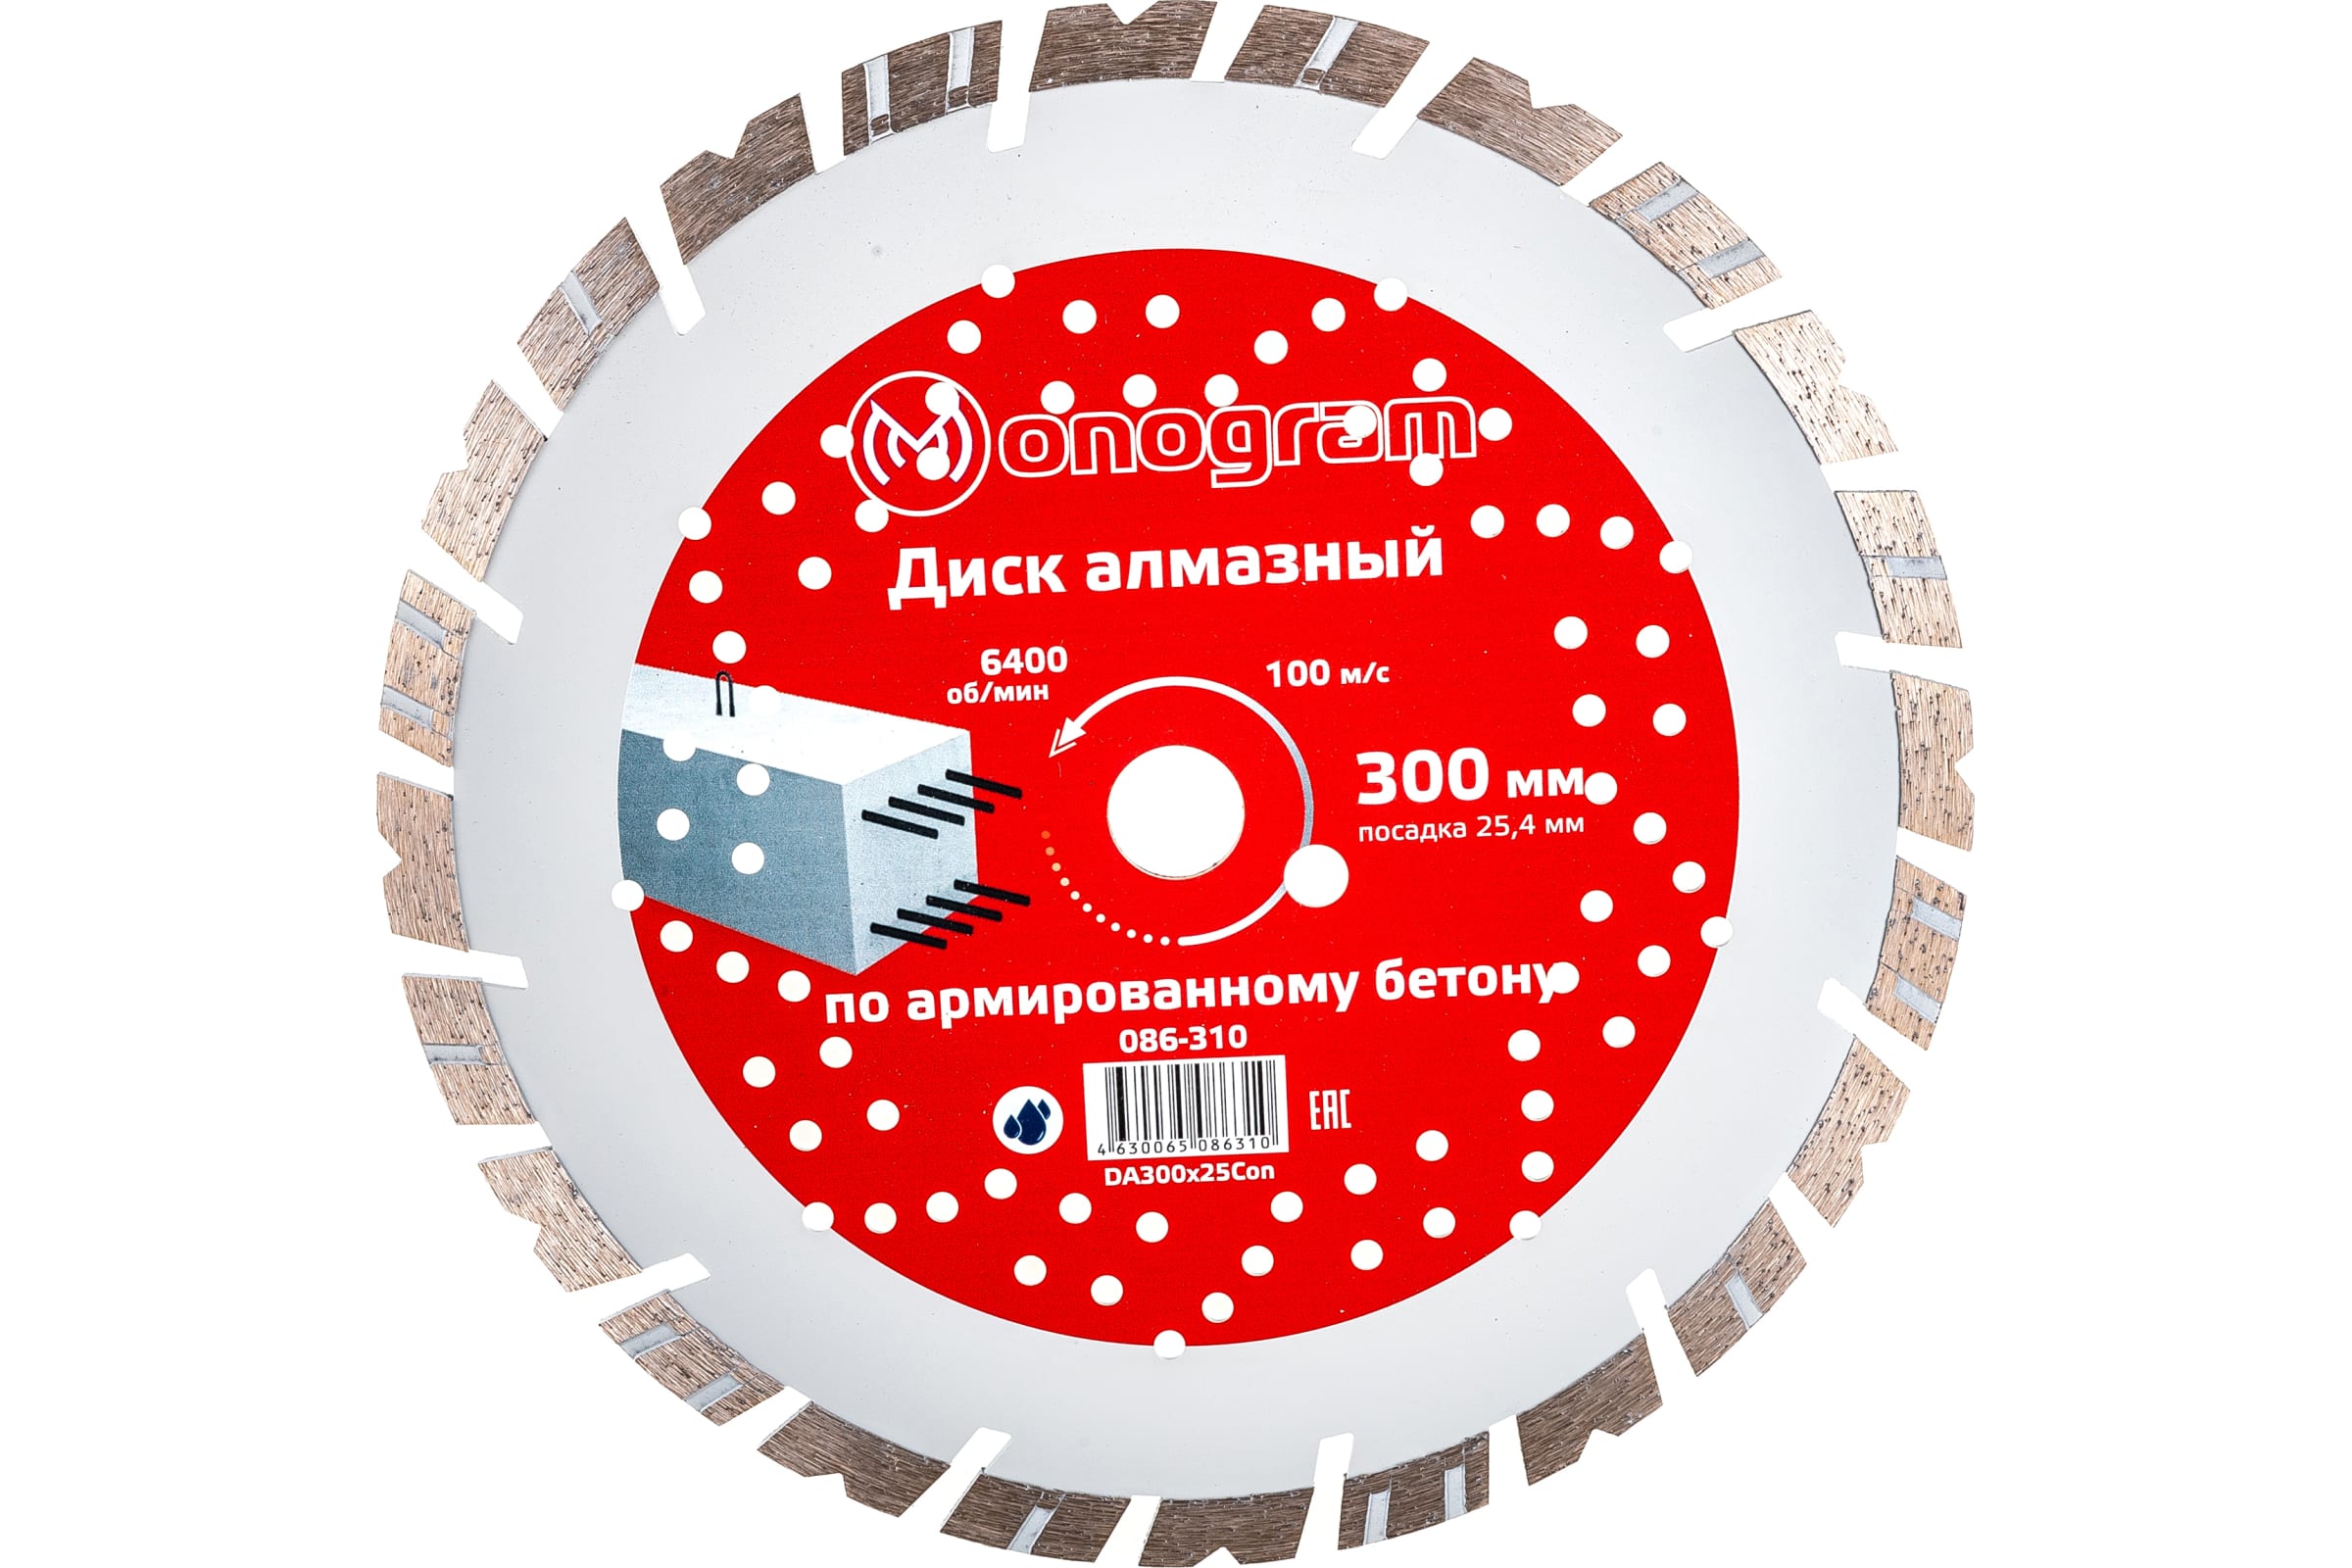 MONOGRAM Диск алмазный турбосегментный Special 300х25,4мм 086-310 турбосегментный алмазный диск monogram